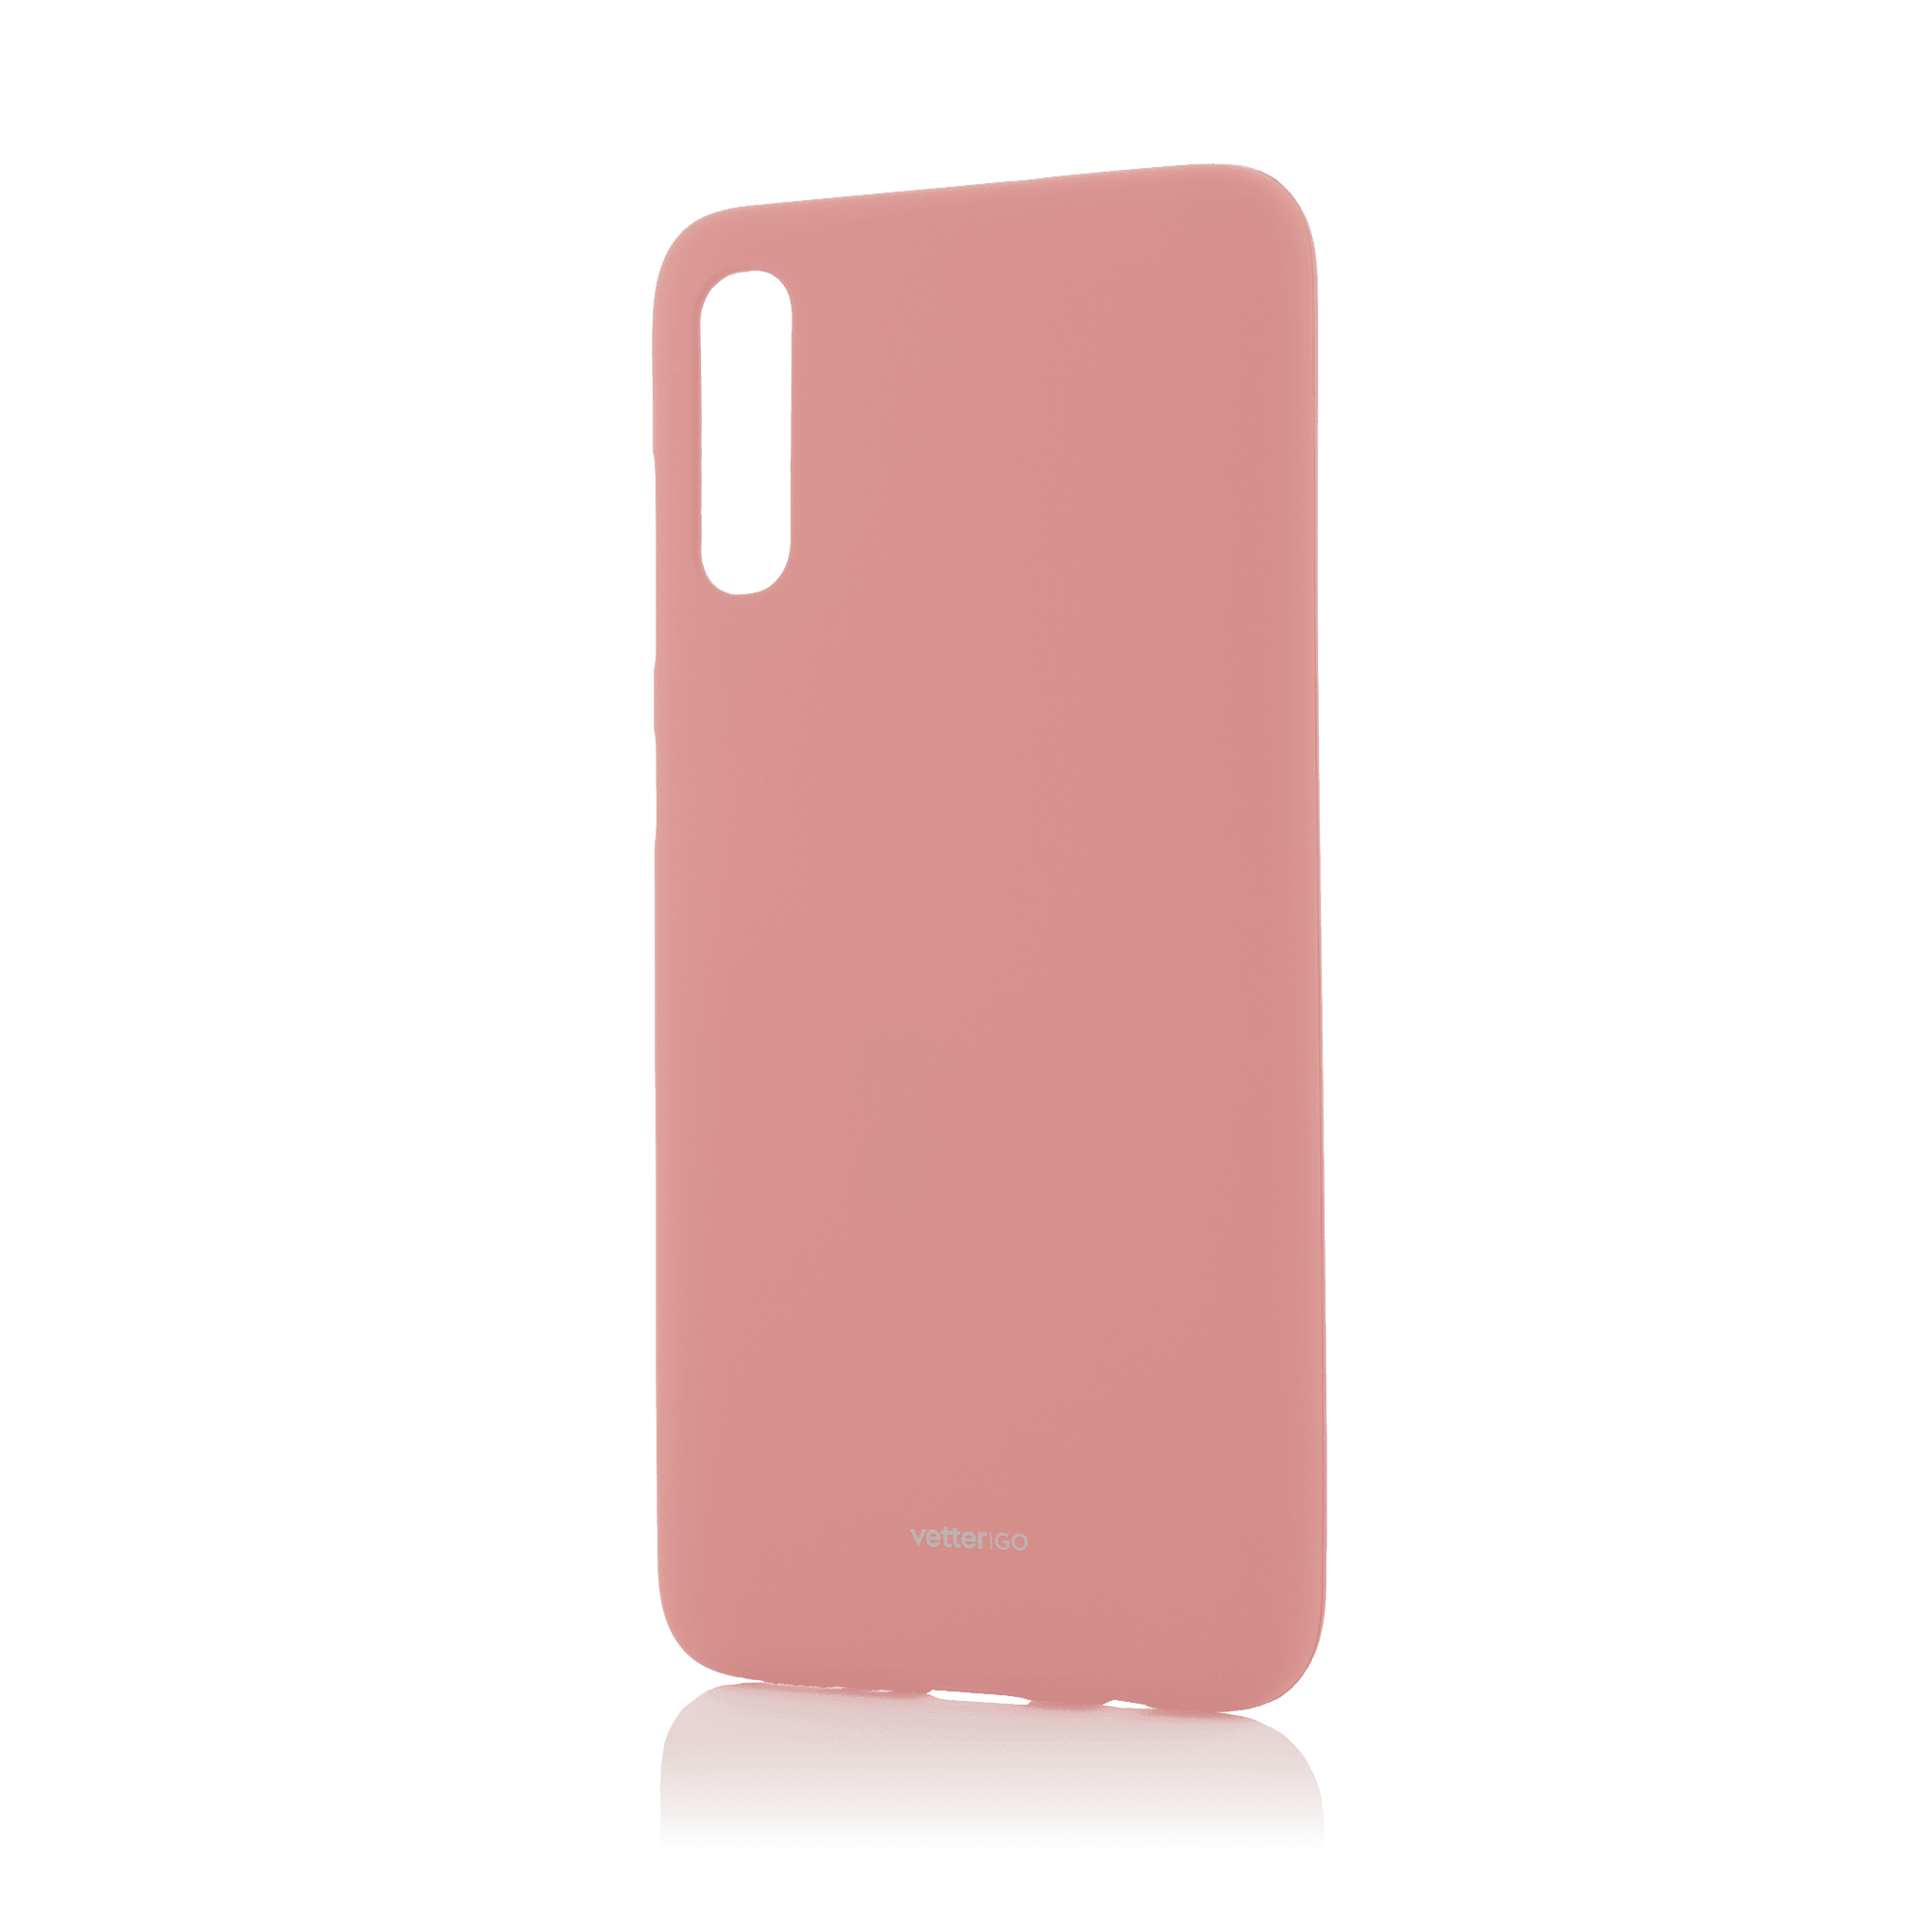 Husa Vetter GO pentru Samsung Galaxy A70, Soft Touch, Pink - vetter.ro